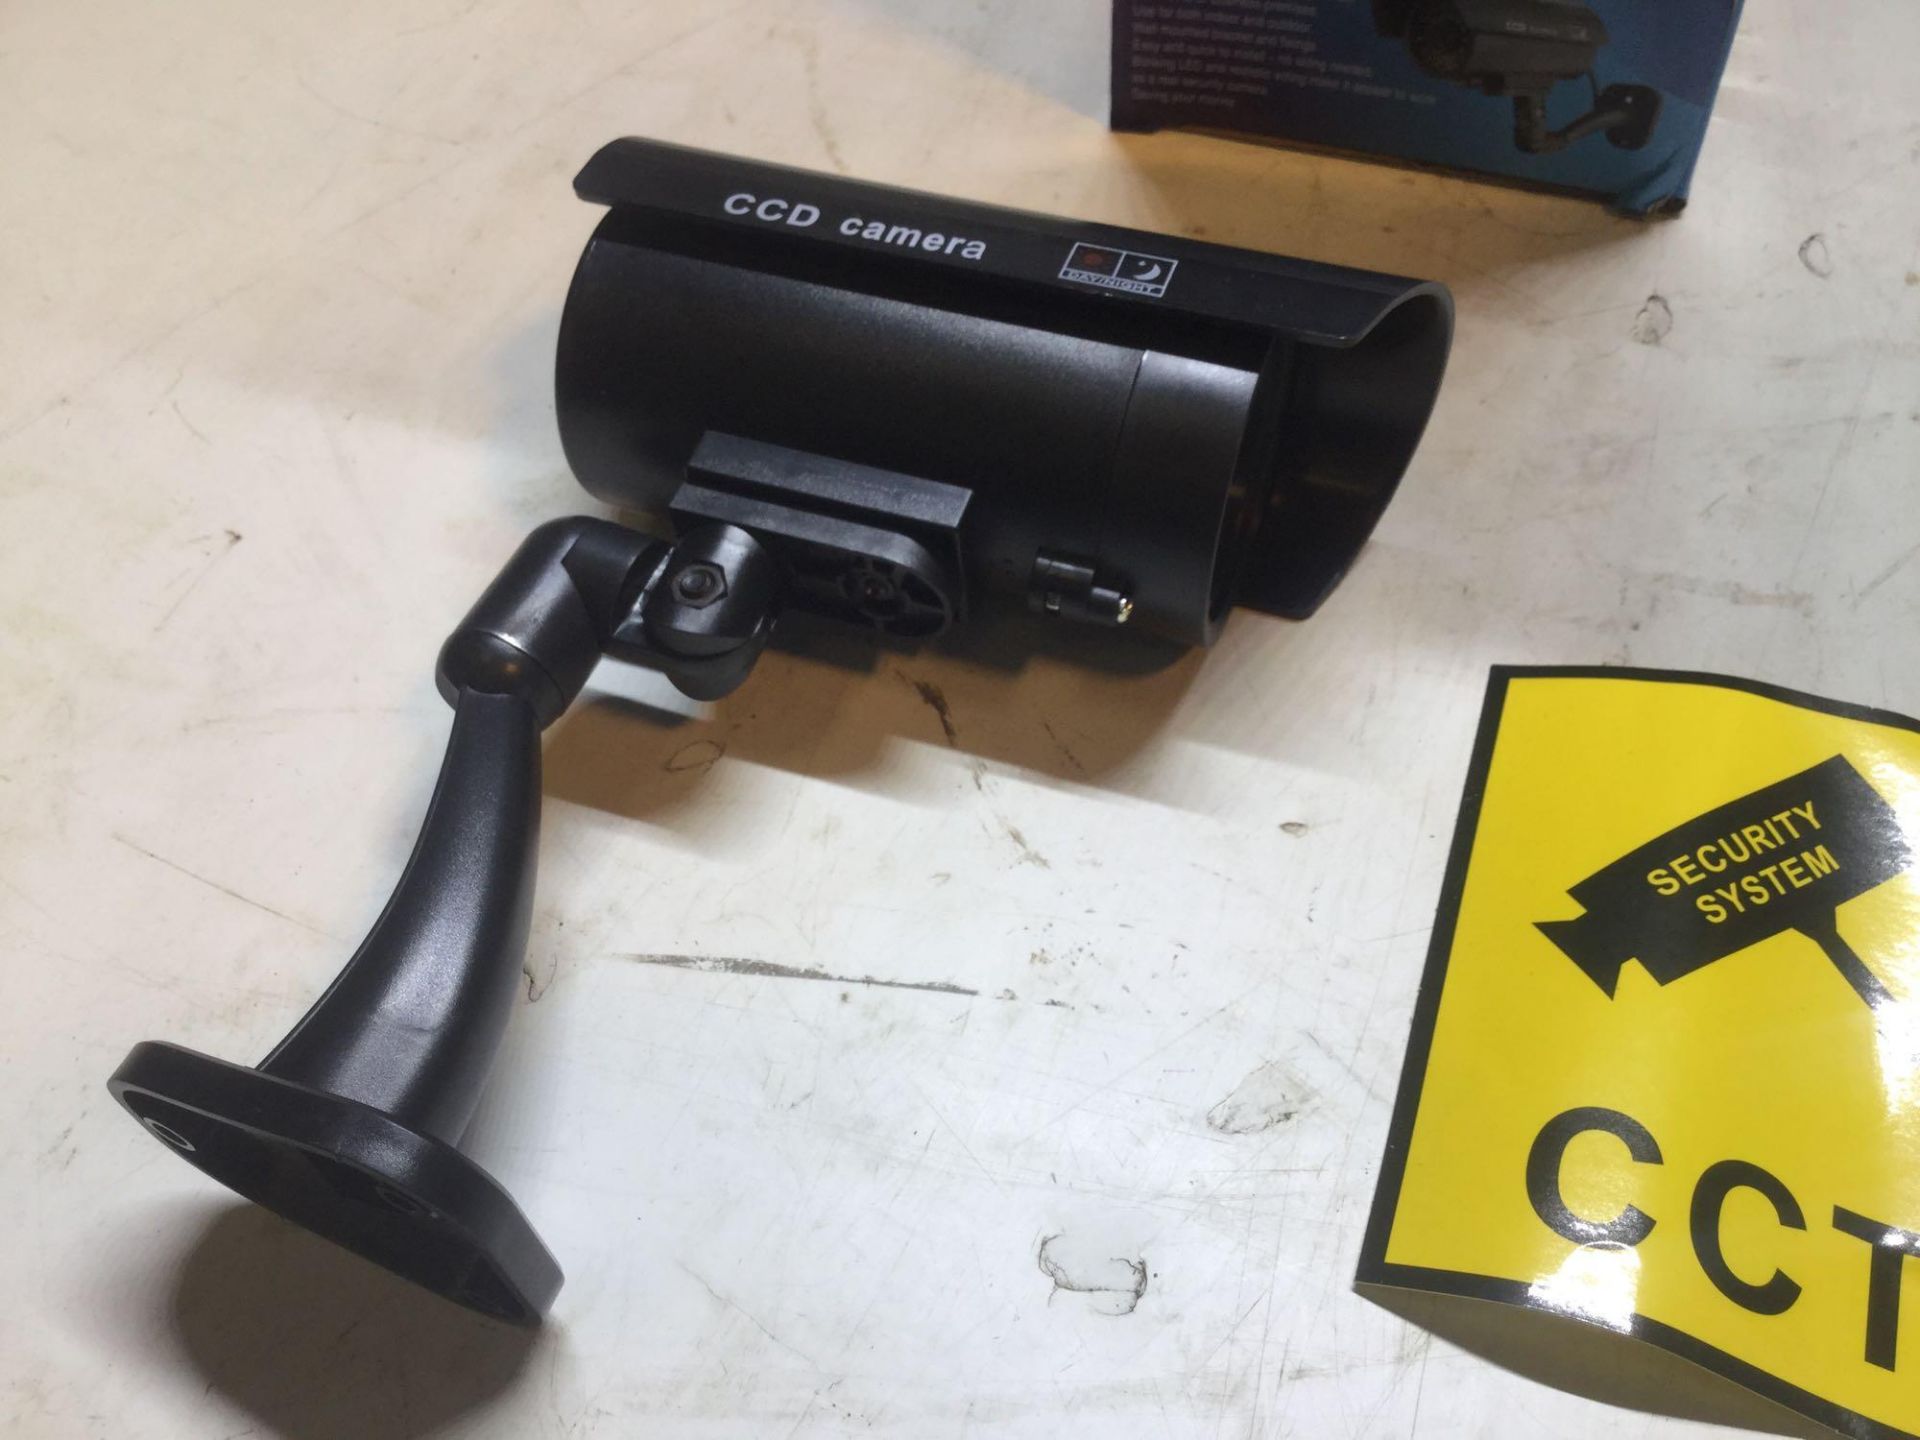 X5 Dummy CCTV Cameras With Flashing LED - Image 2 of 4